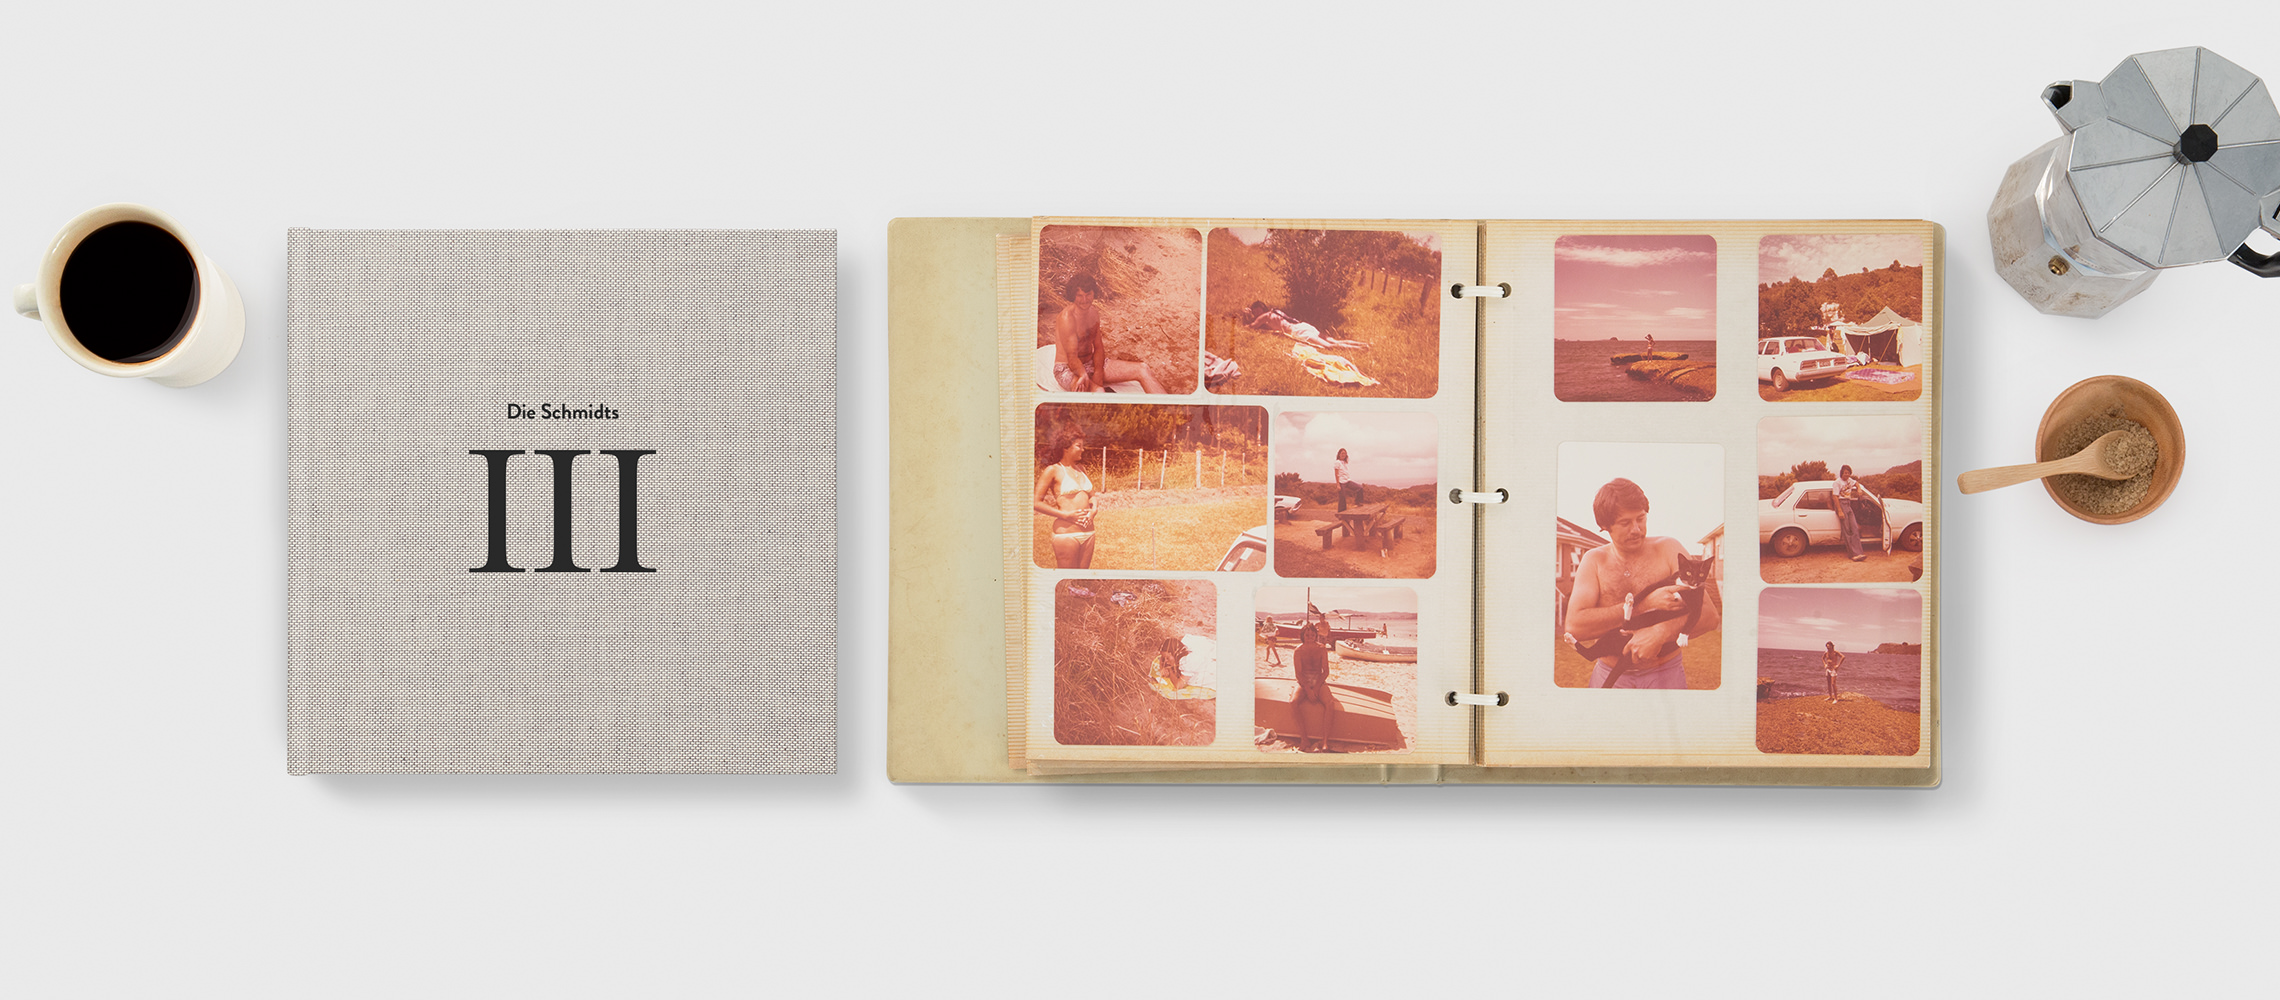 Ein geschlossenes und ein geöffnetes Fotobuch mit Retrobildern einer Reise.Ein geschlossenes und ein geöffnetes Fotobuch mit Retrobildern einer Reise.